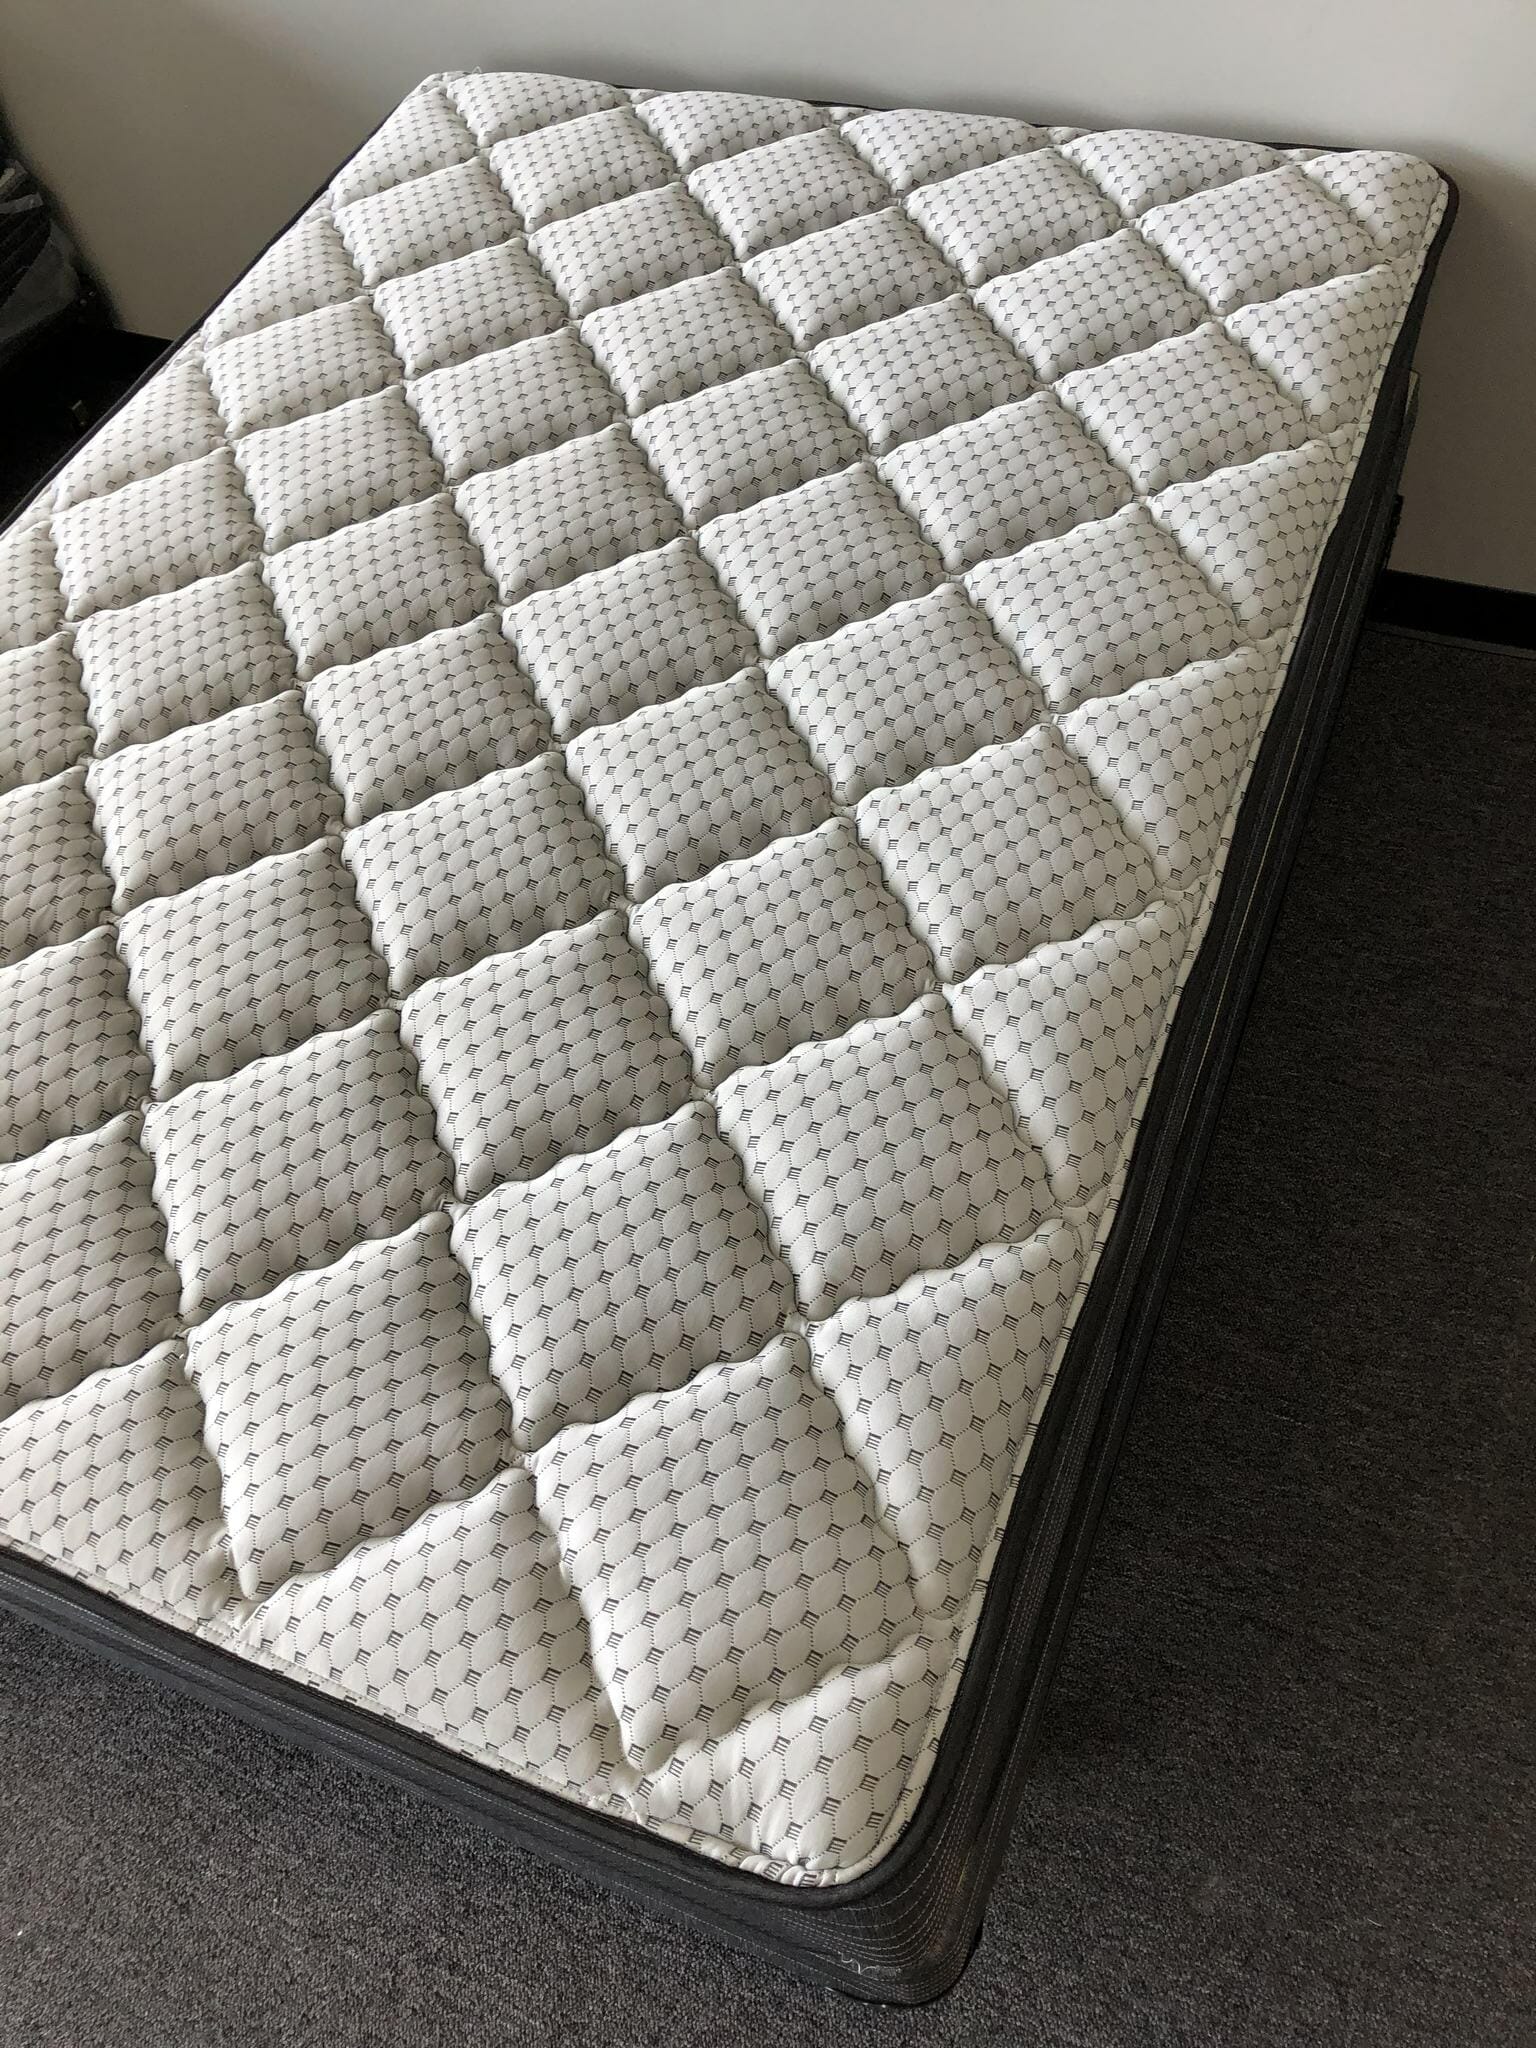 24++ Rl mattress warehouse ideas